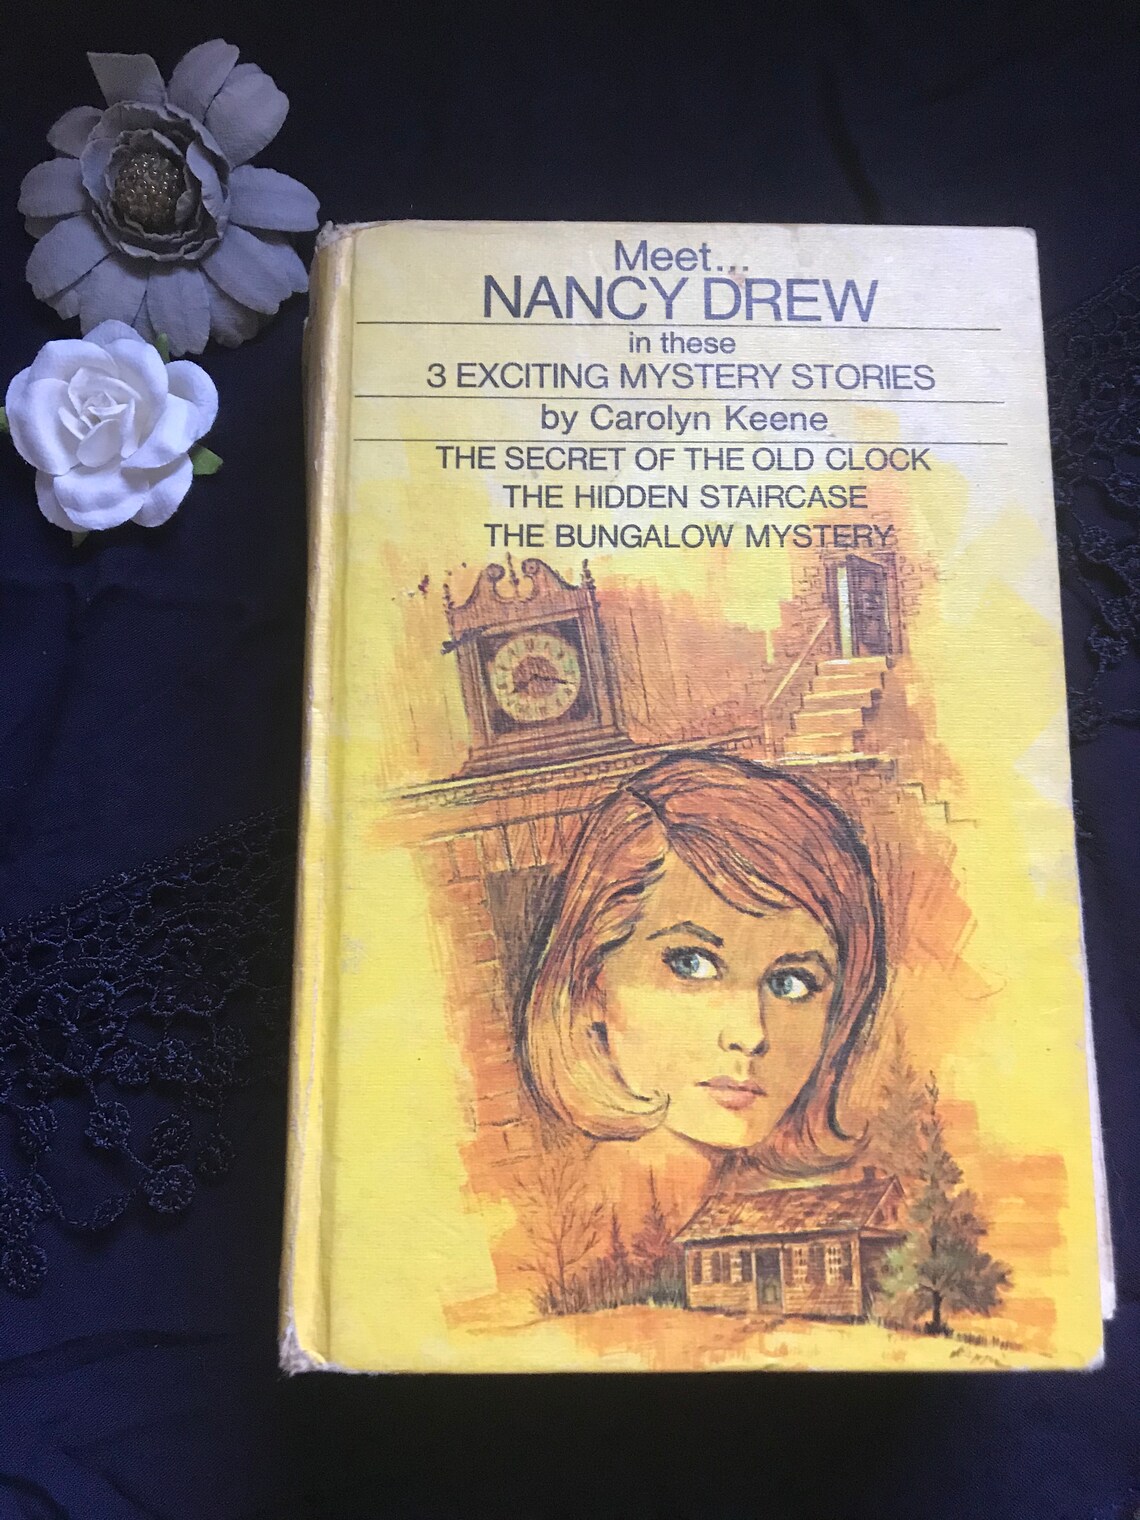 Nancy Drew Mystery Stories Three Titles | Etsy